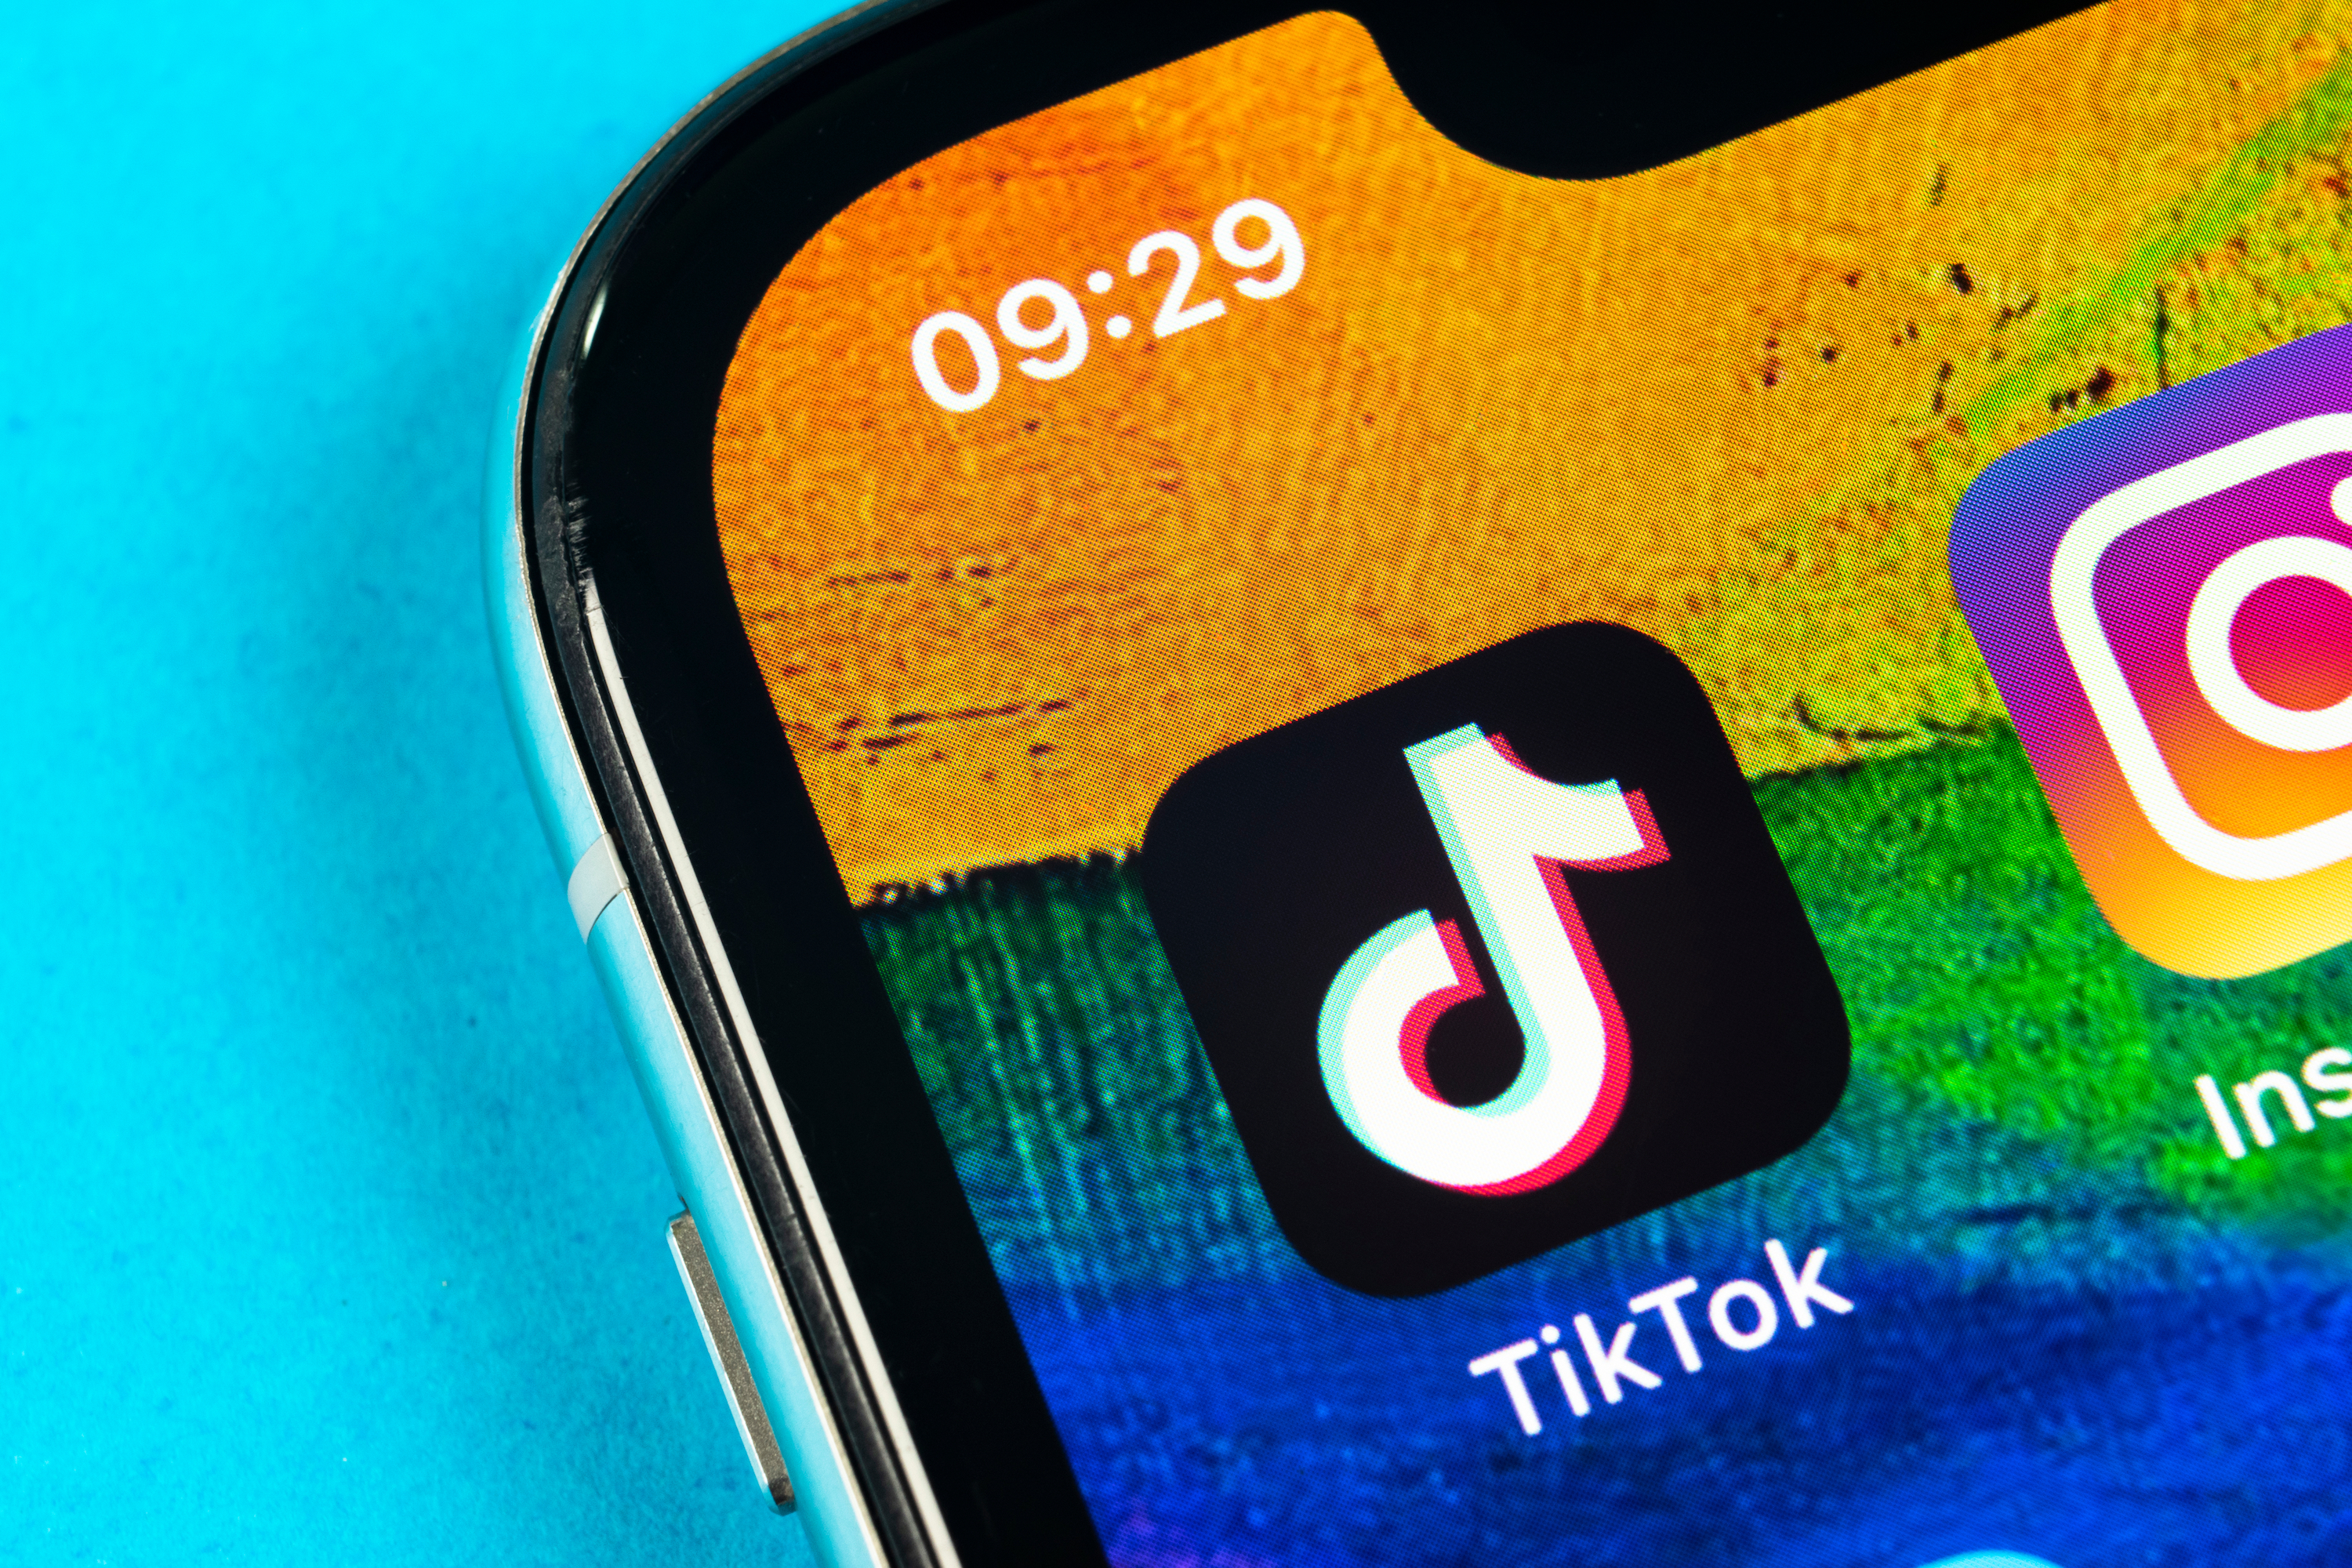 TikTok app icon on iPhone